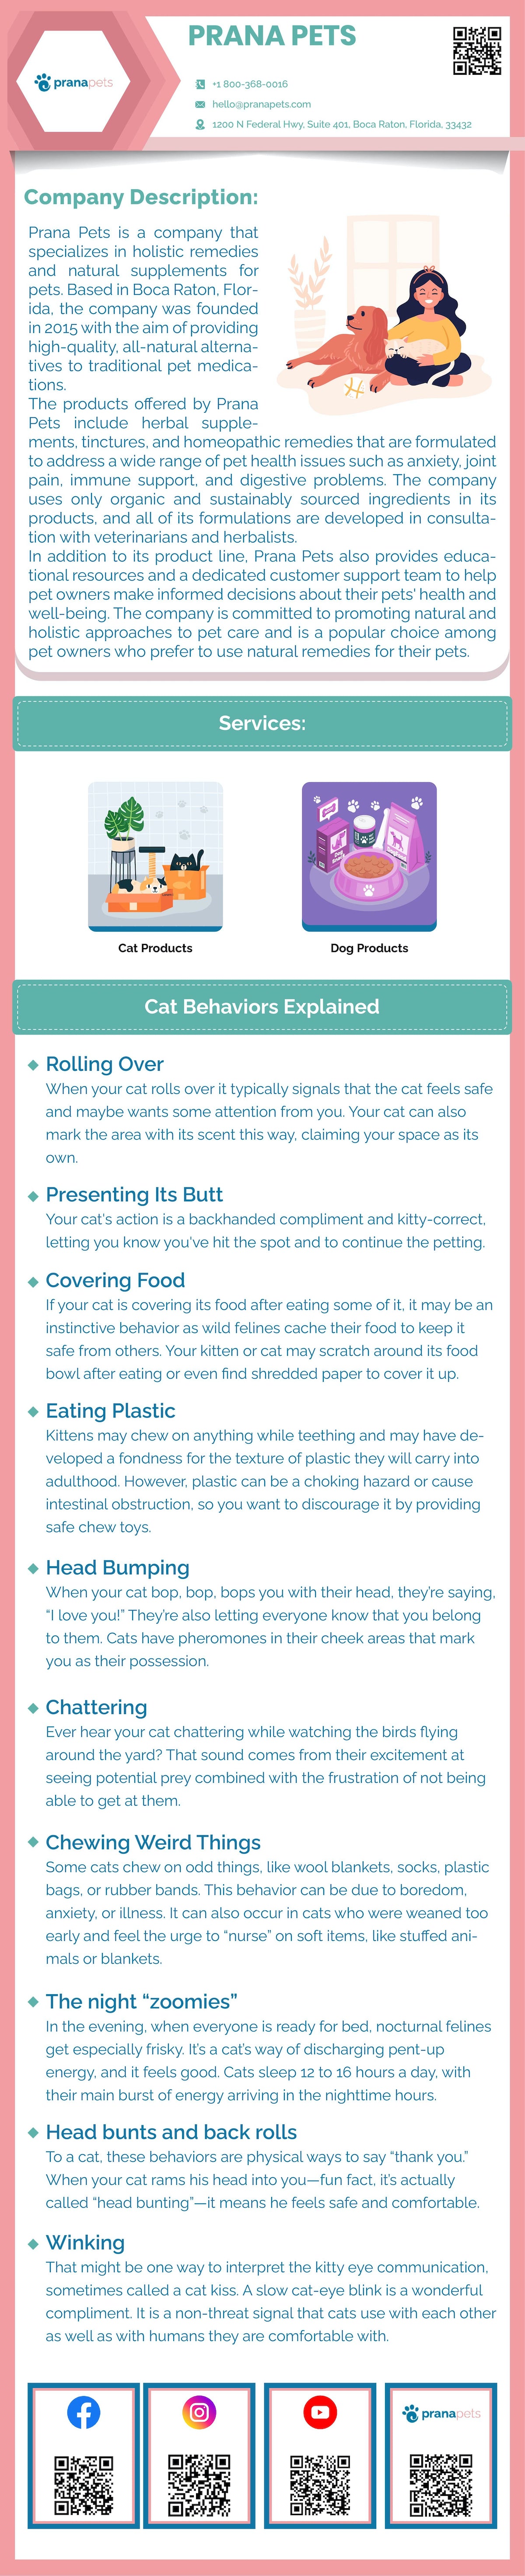 Weird Cat Behaviors Infographic